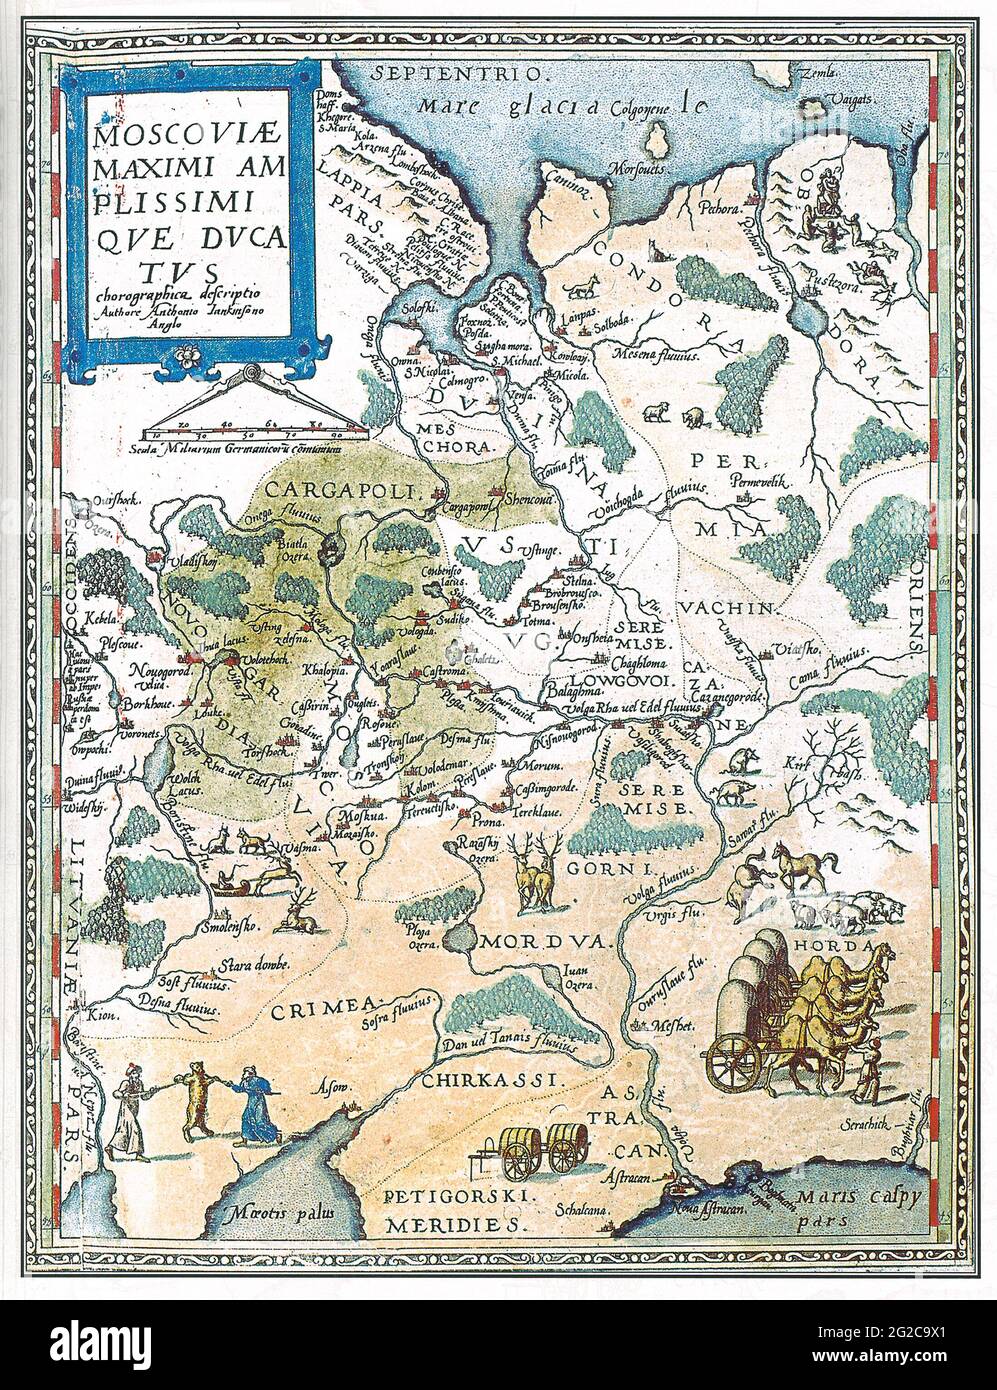 Carte du Grand-Duché de Moscou, carte de la Moscovie, carte de la Moscovie, Russie moscovite, carte de la Russie moscovite,Carte de la Russie moscovite, Rus moscovite, carte de Moscou Banque D'Images